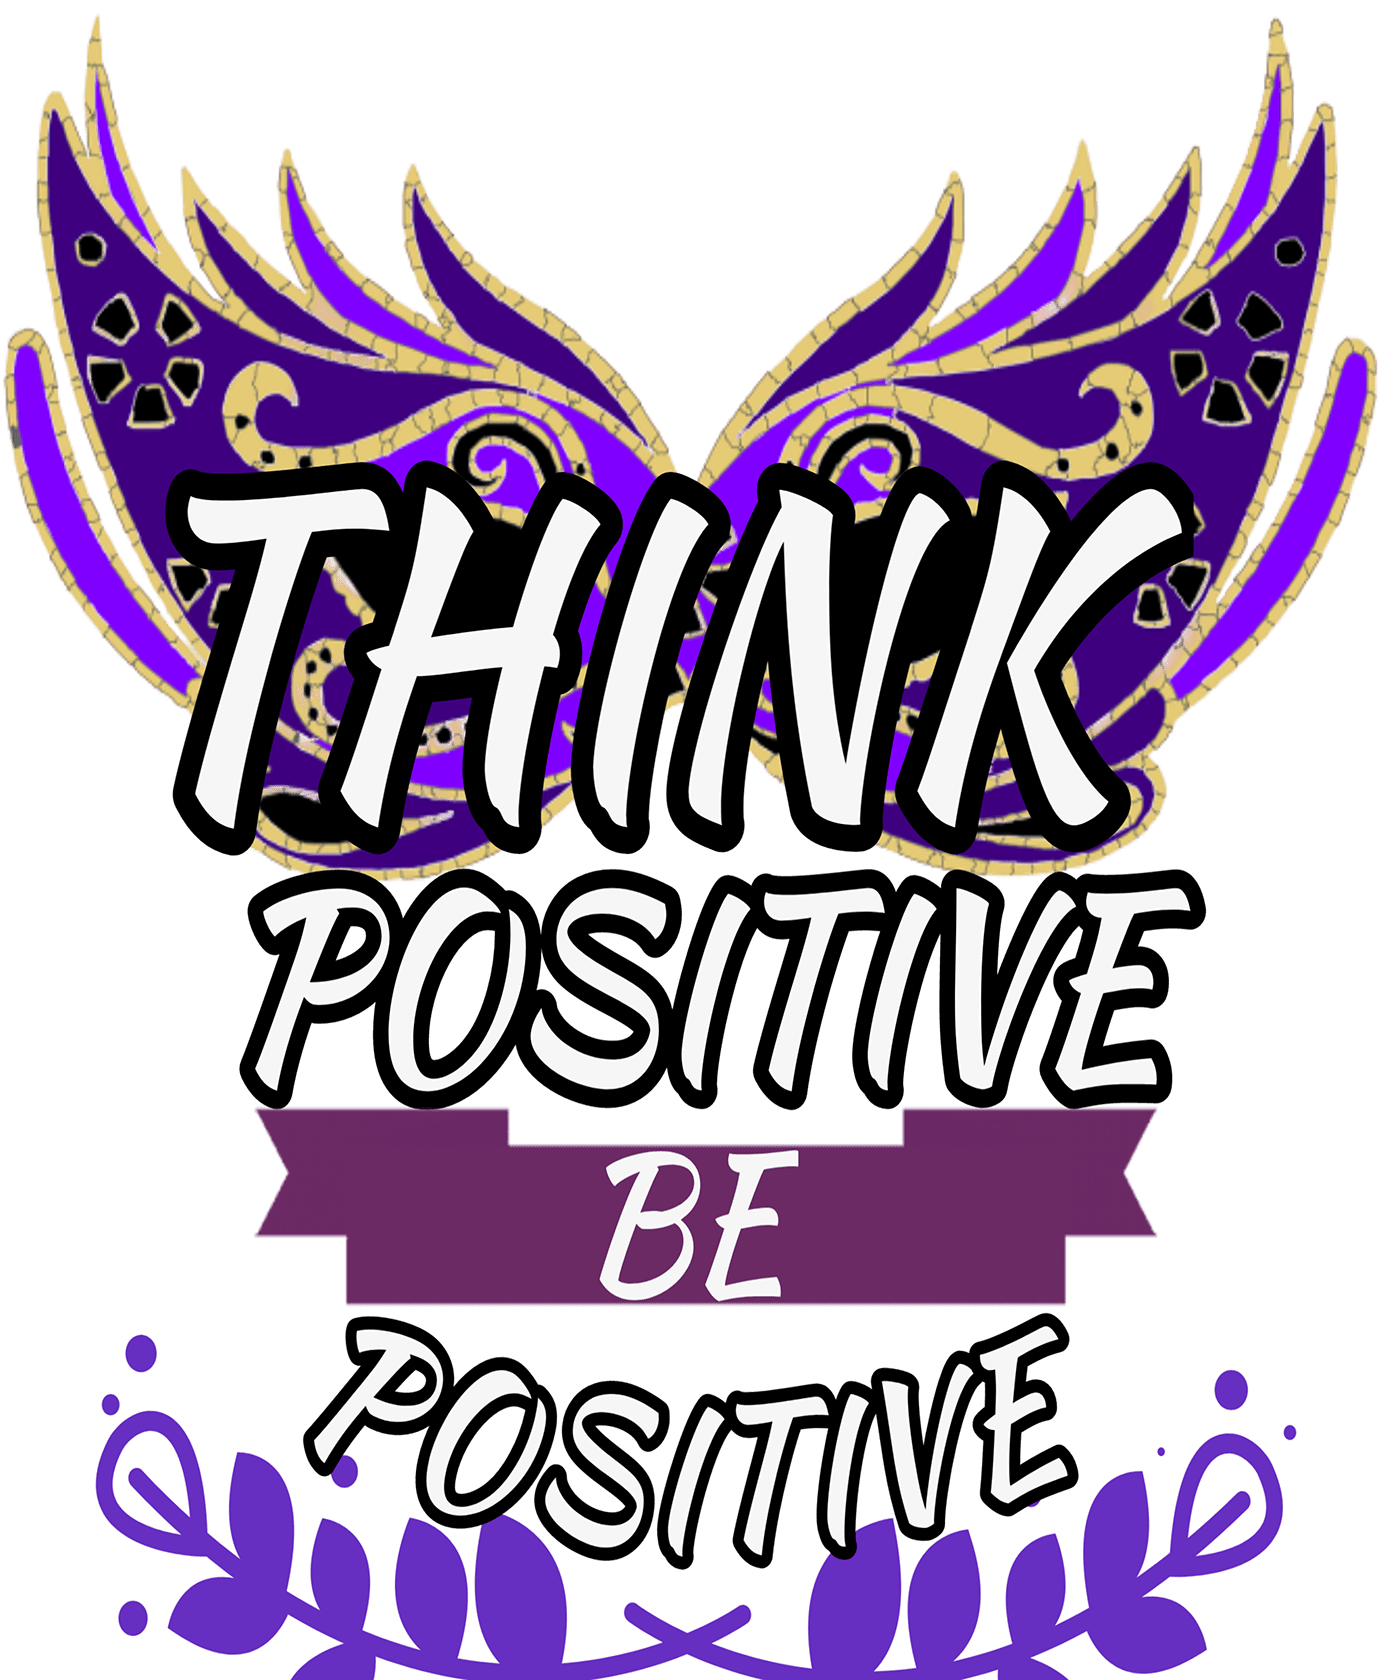 Be Positive positivity